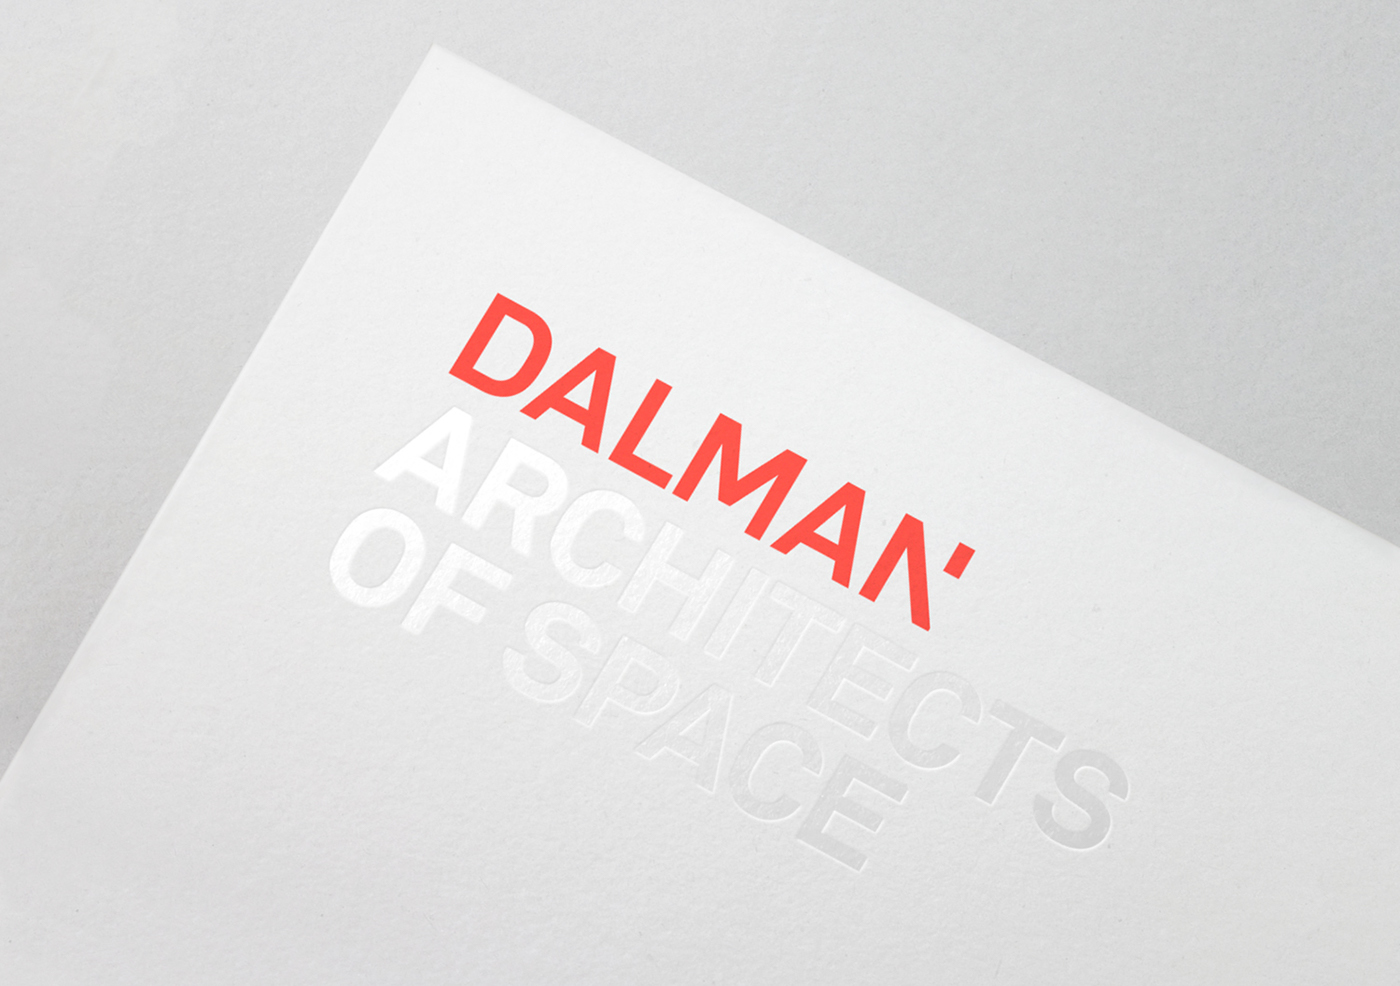 architect dalman bold identity clear foil red bright minimal grid Dynamic